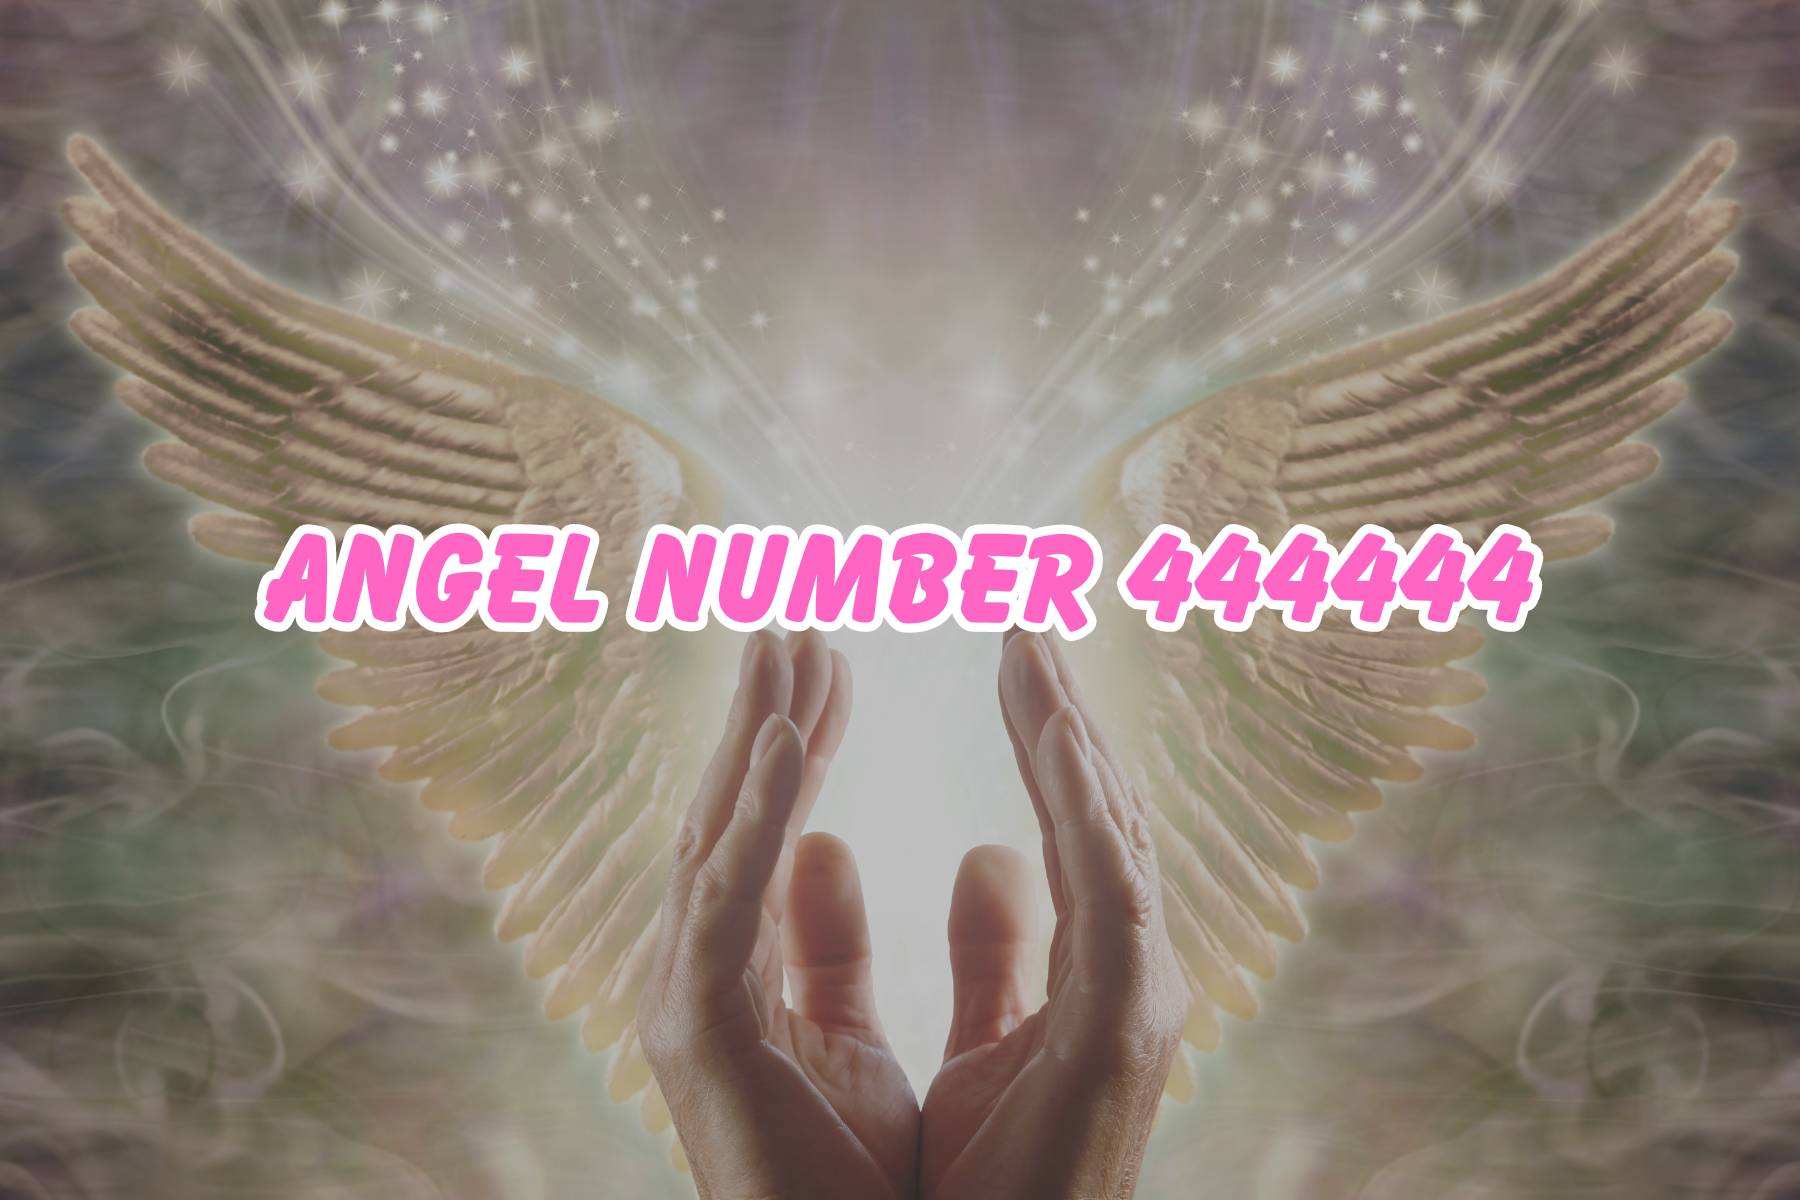 Angel Number 444444